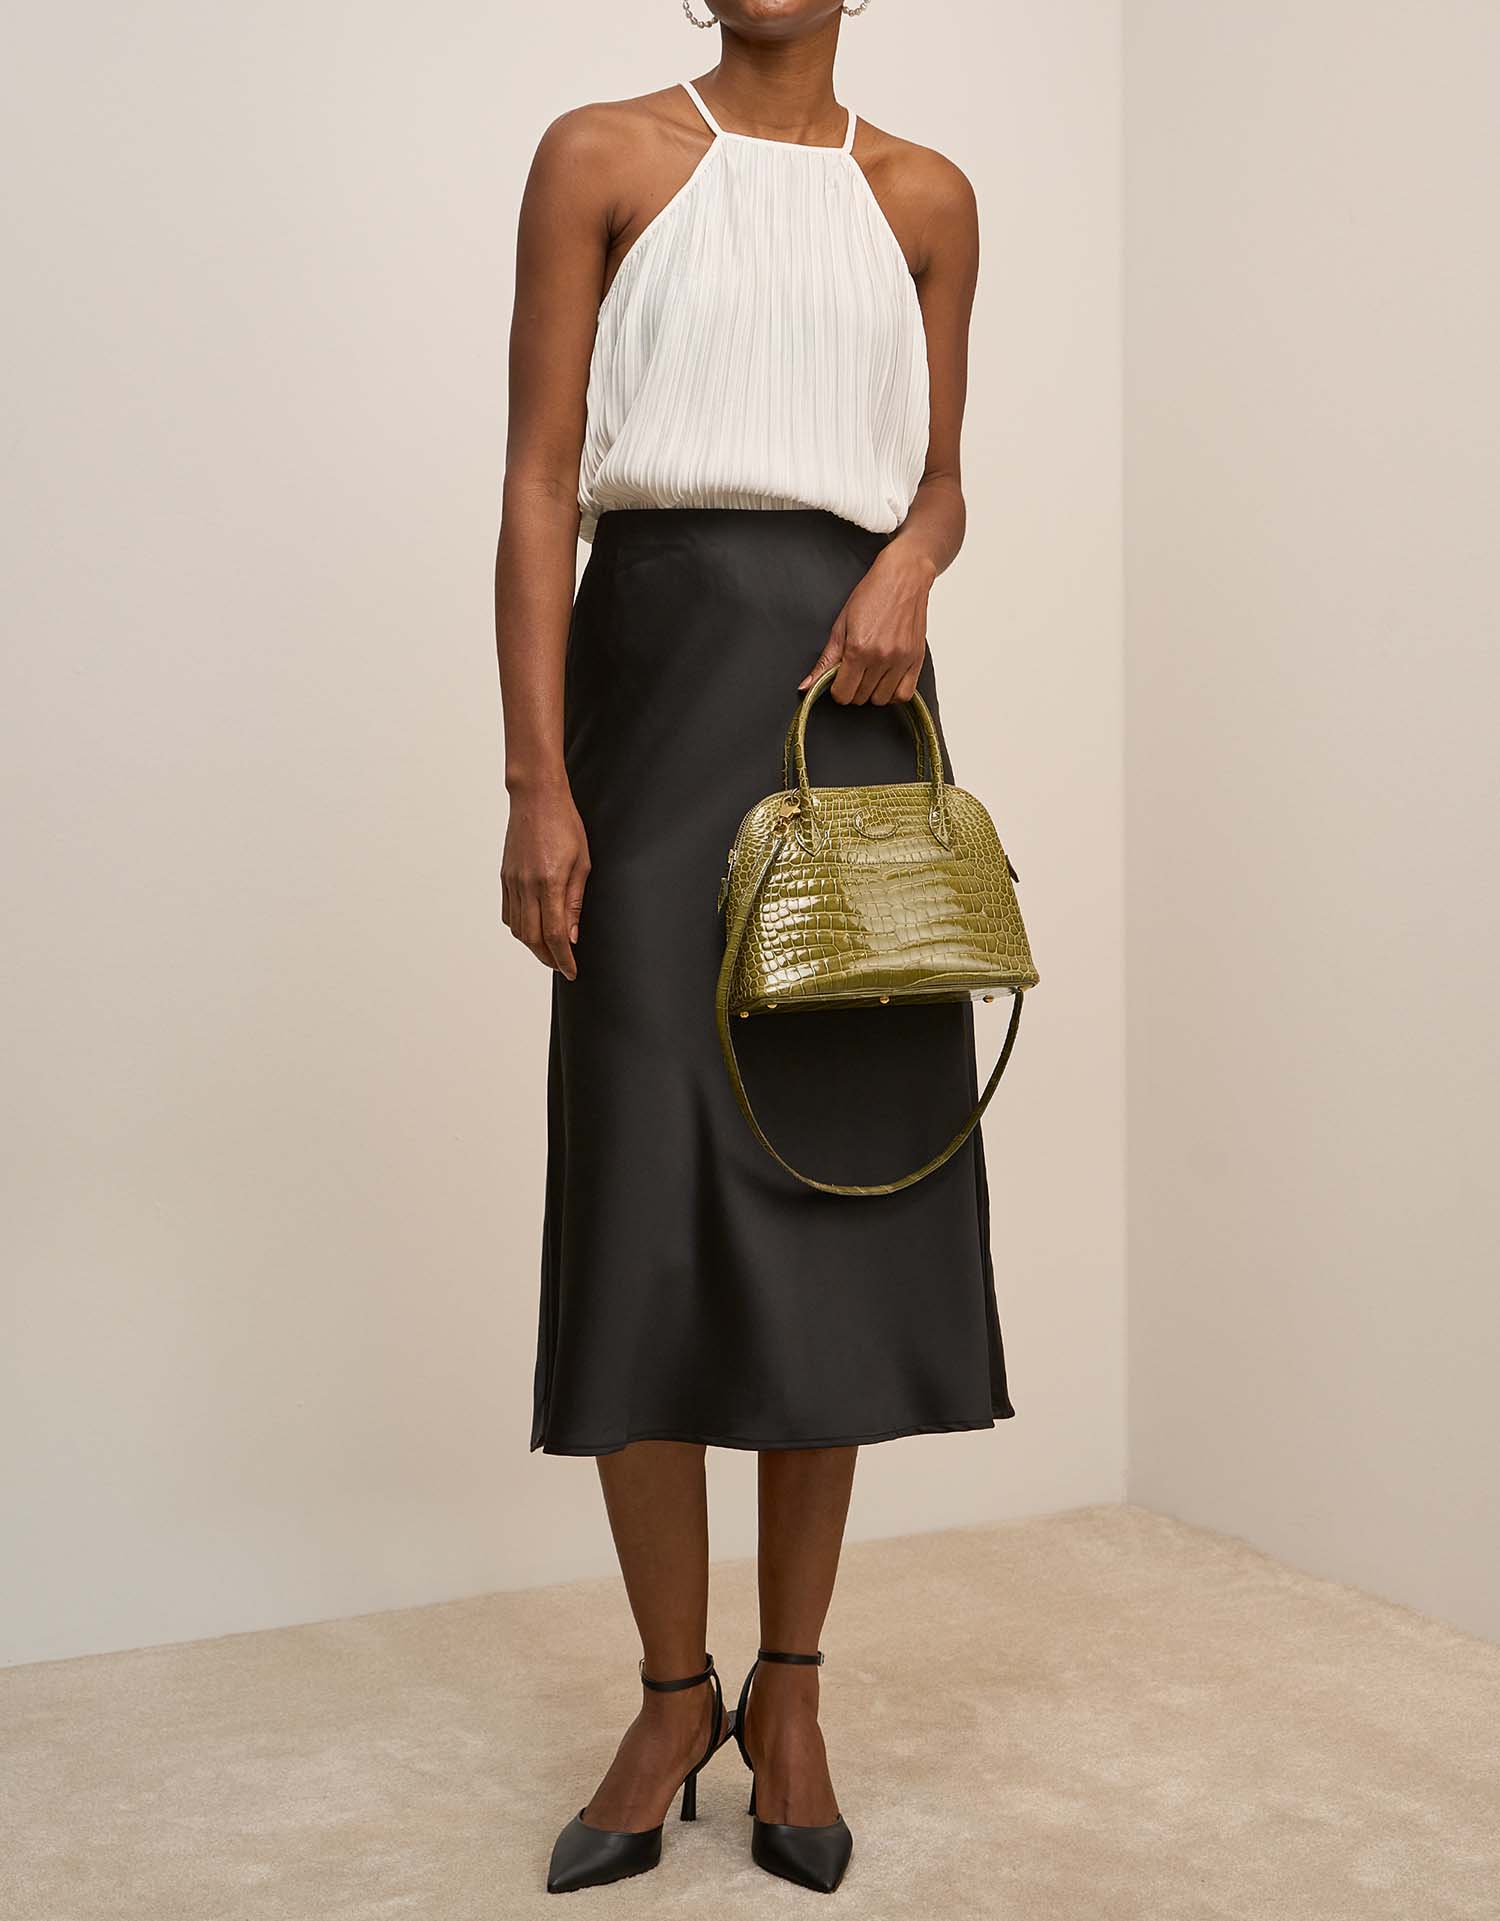 Hermès Bolide 27 VertAnis auf Model | Verkaufen Sie Ihre Designertasche auf Saclab.com